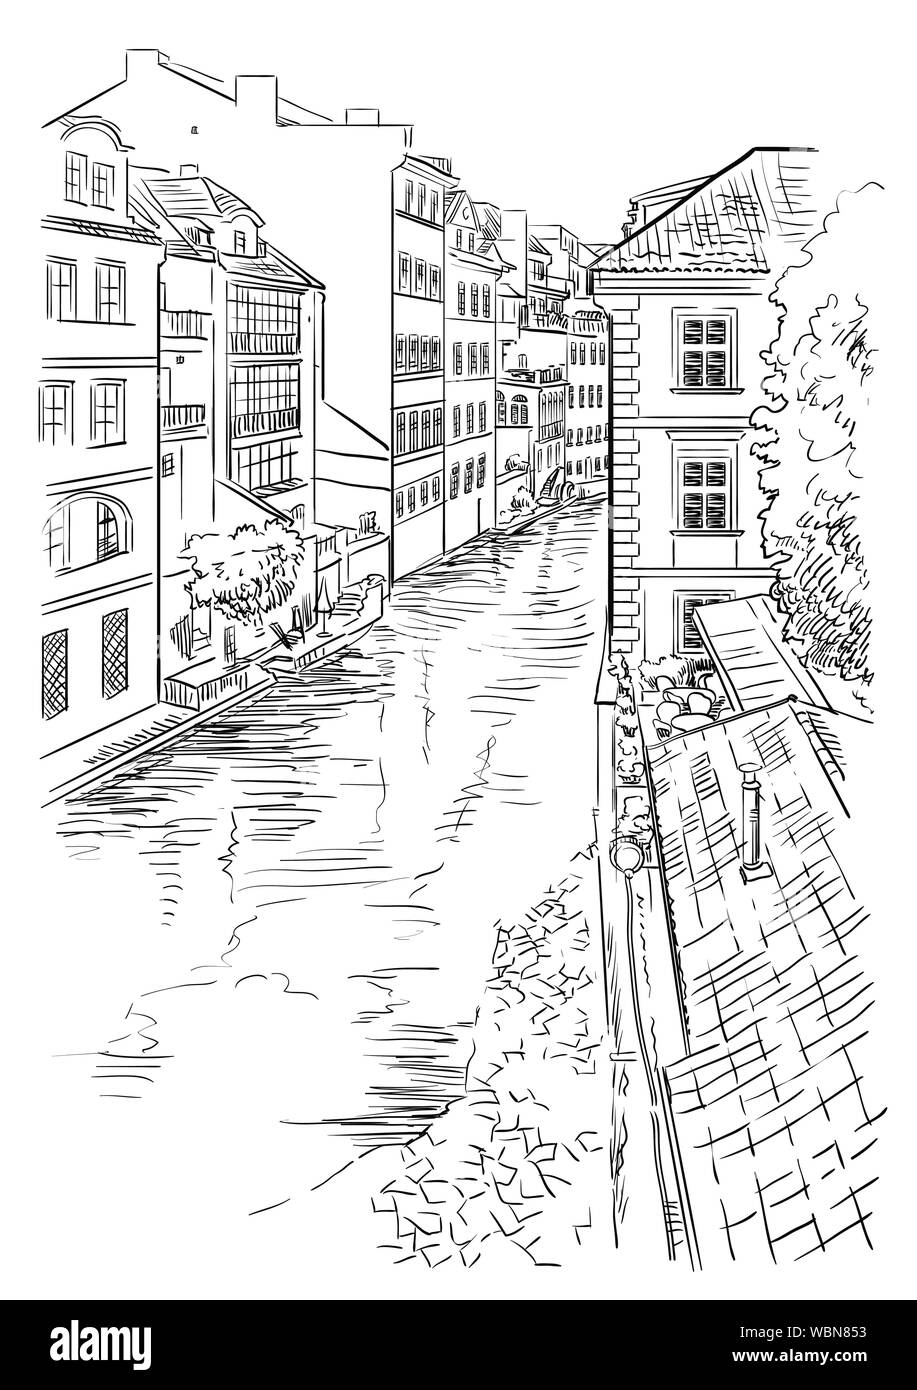 Vettore di disegno a mano illustrazione di Certovka canall di Praga. Di Praga, Repubblica Ceca. Illustrazione Vettoriale in colore nero isolato sulla Pentecoste Illustrazione Vettoriale